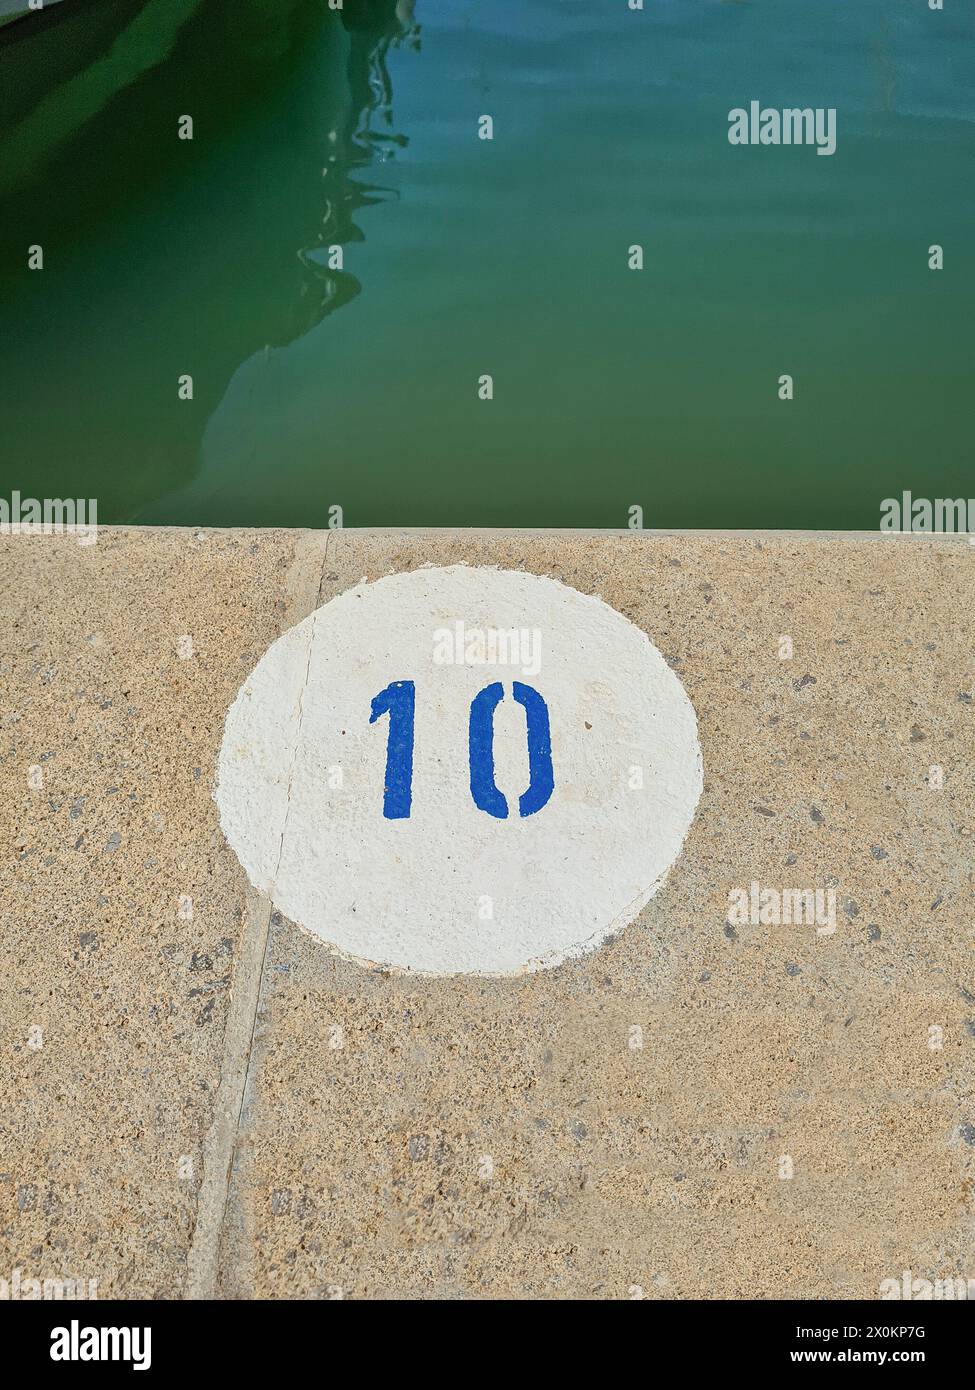 Un cerchio rotondo bianco con il numero 10 blu, che indica il pavimento in pietra, il porto, Maiorca, Spagna Foto Stock